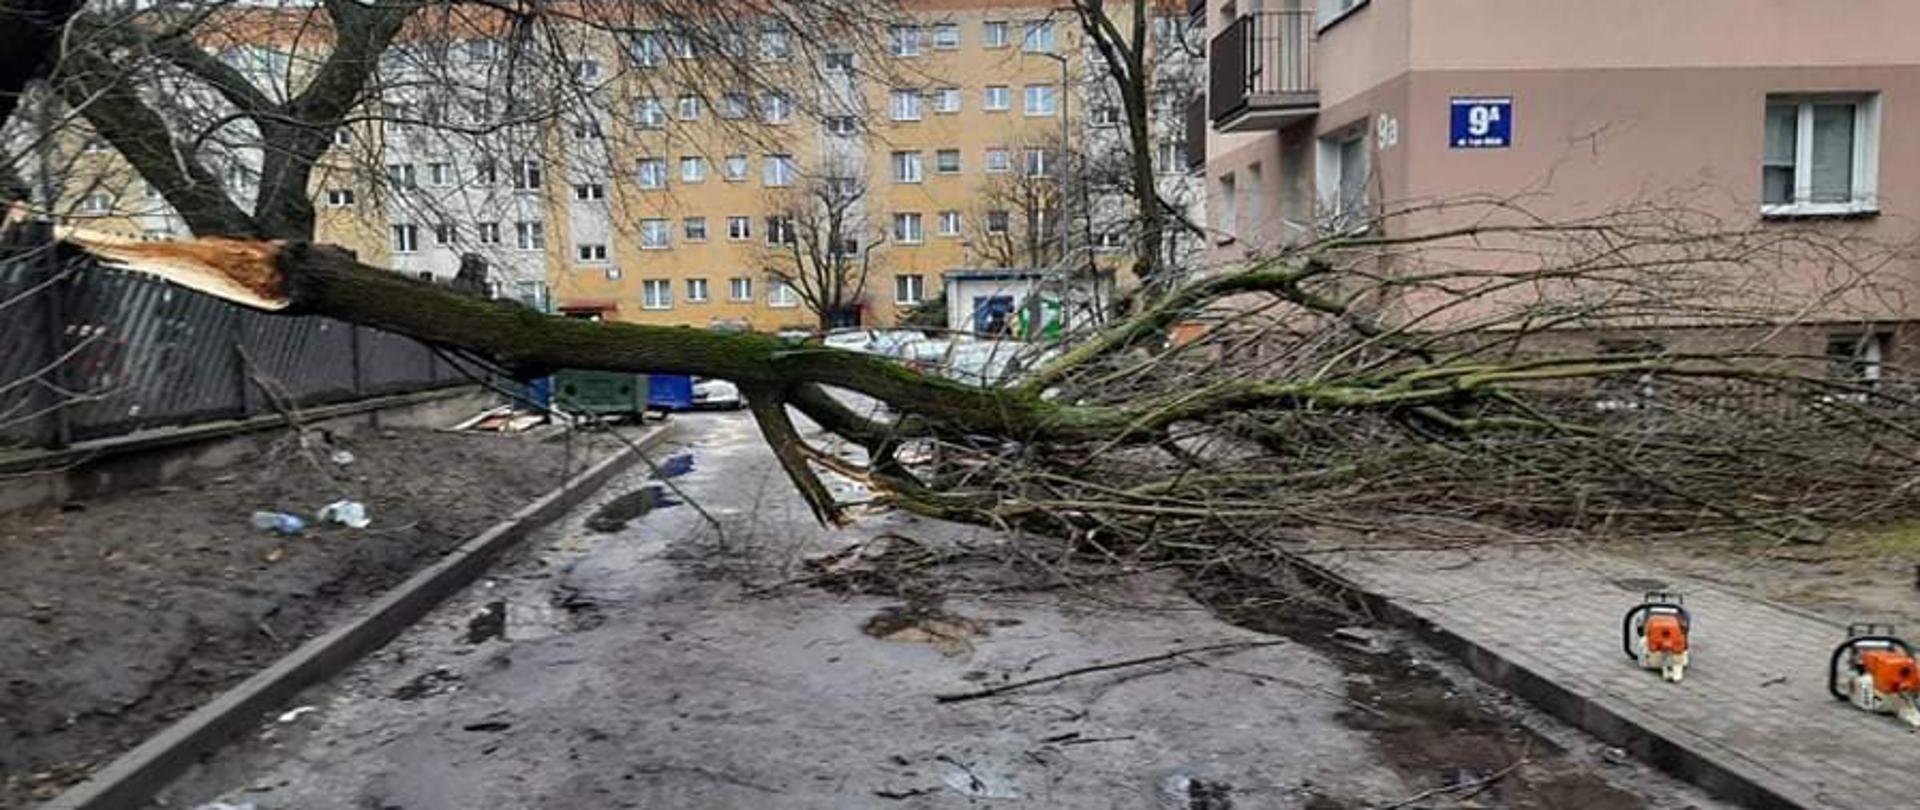 Na zdjęciu widać drzewo powalone na osiedlową uliczkę i blokujące przejazd.